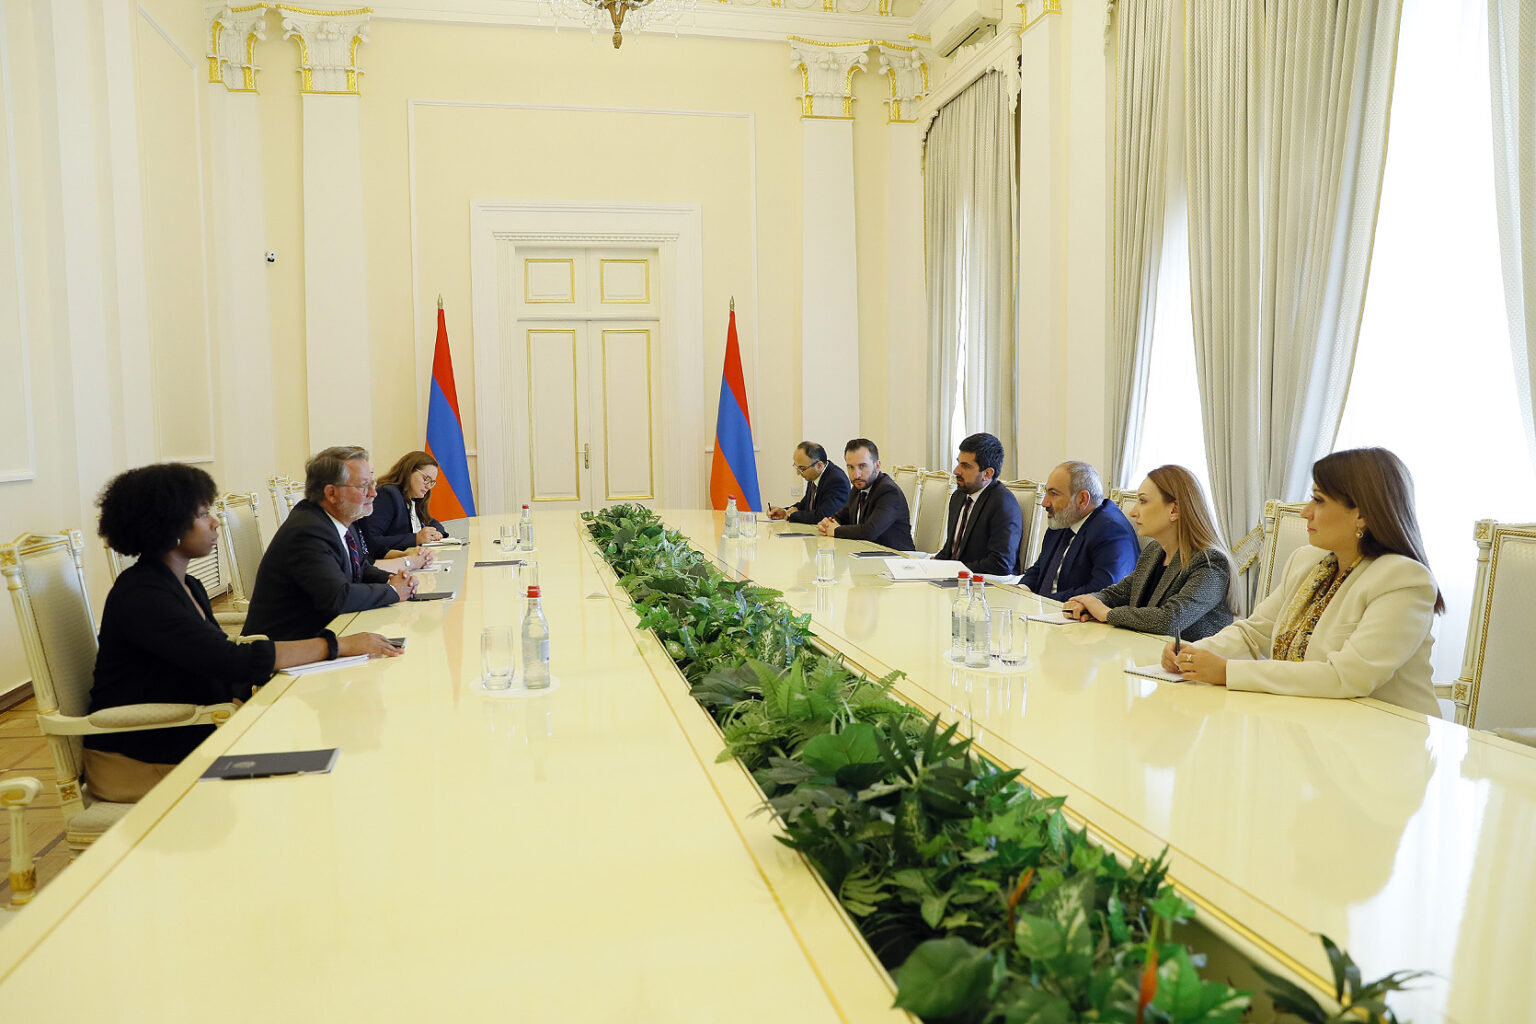 Սենատոր Փիթերսը Փաշինյանի հետ հանդիպմանը վերահաստատել է ԱՄՆ-ի աջակցությունը Հայաստանի տարածքային ամբողջականությանը